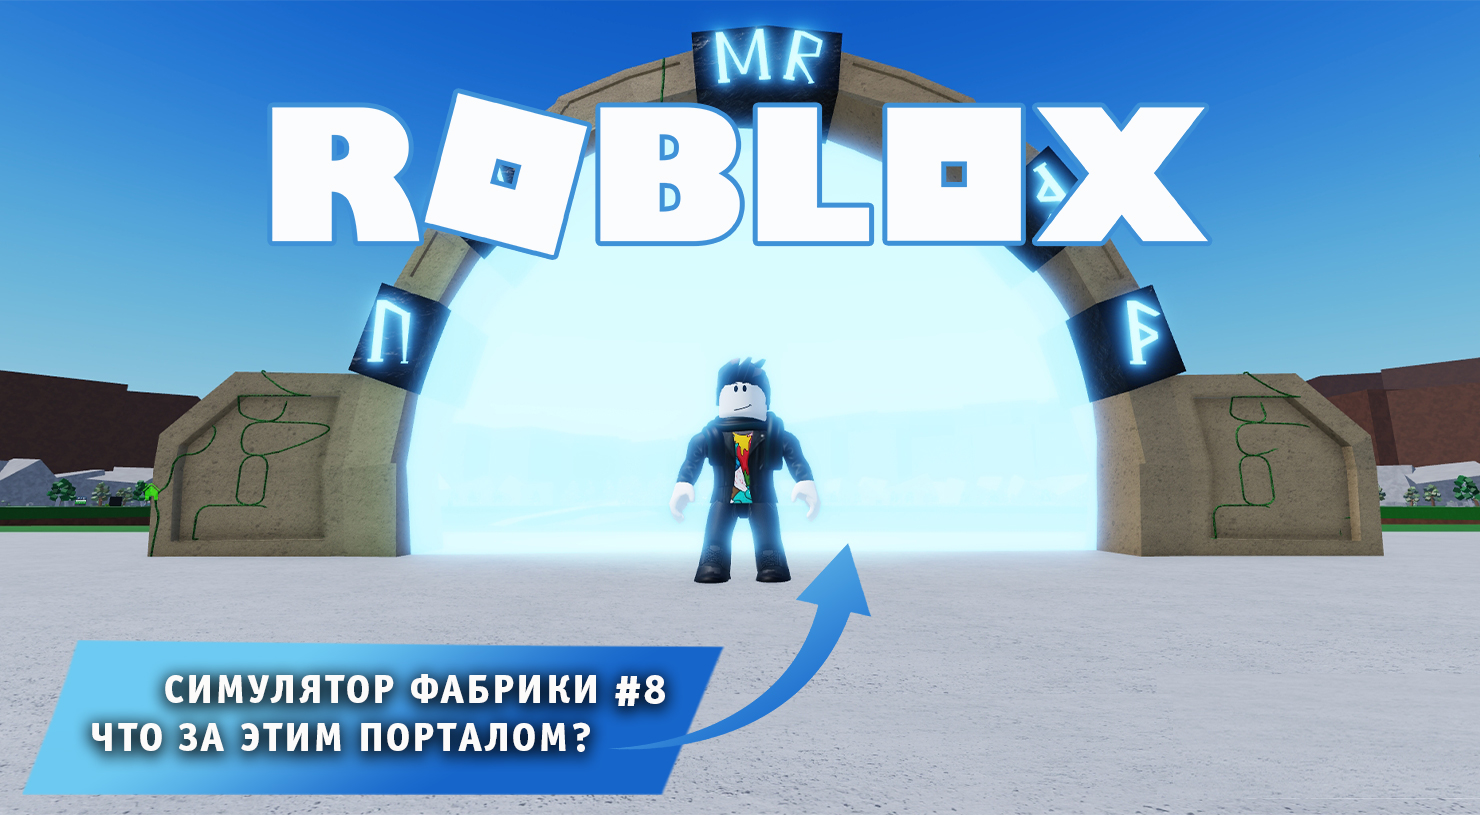 Roblox Factory Simulator  ➤ Часть #8 ➤ Что за этим порталом? ➤Игра Роблокс Симулятор Фабрики